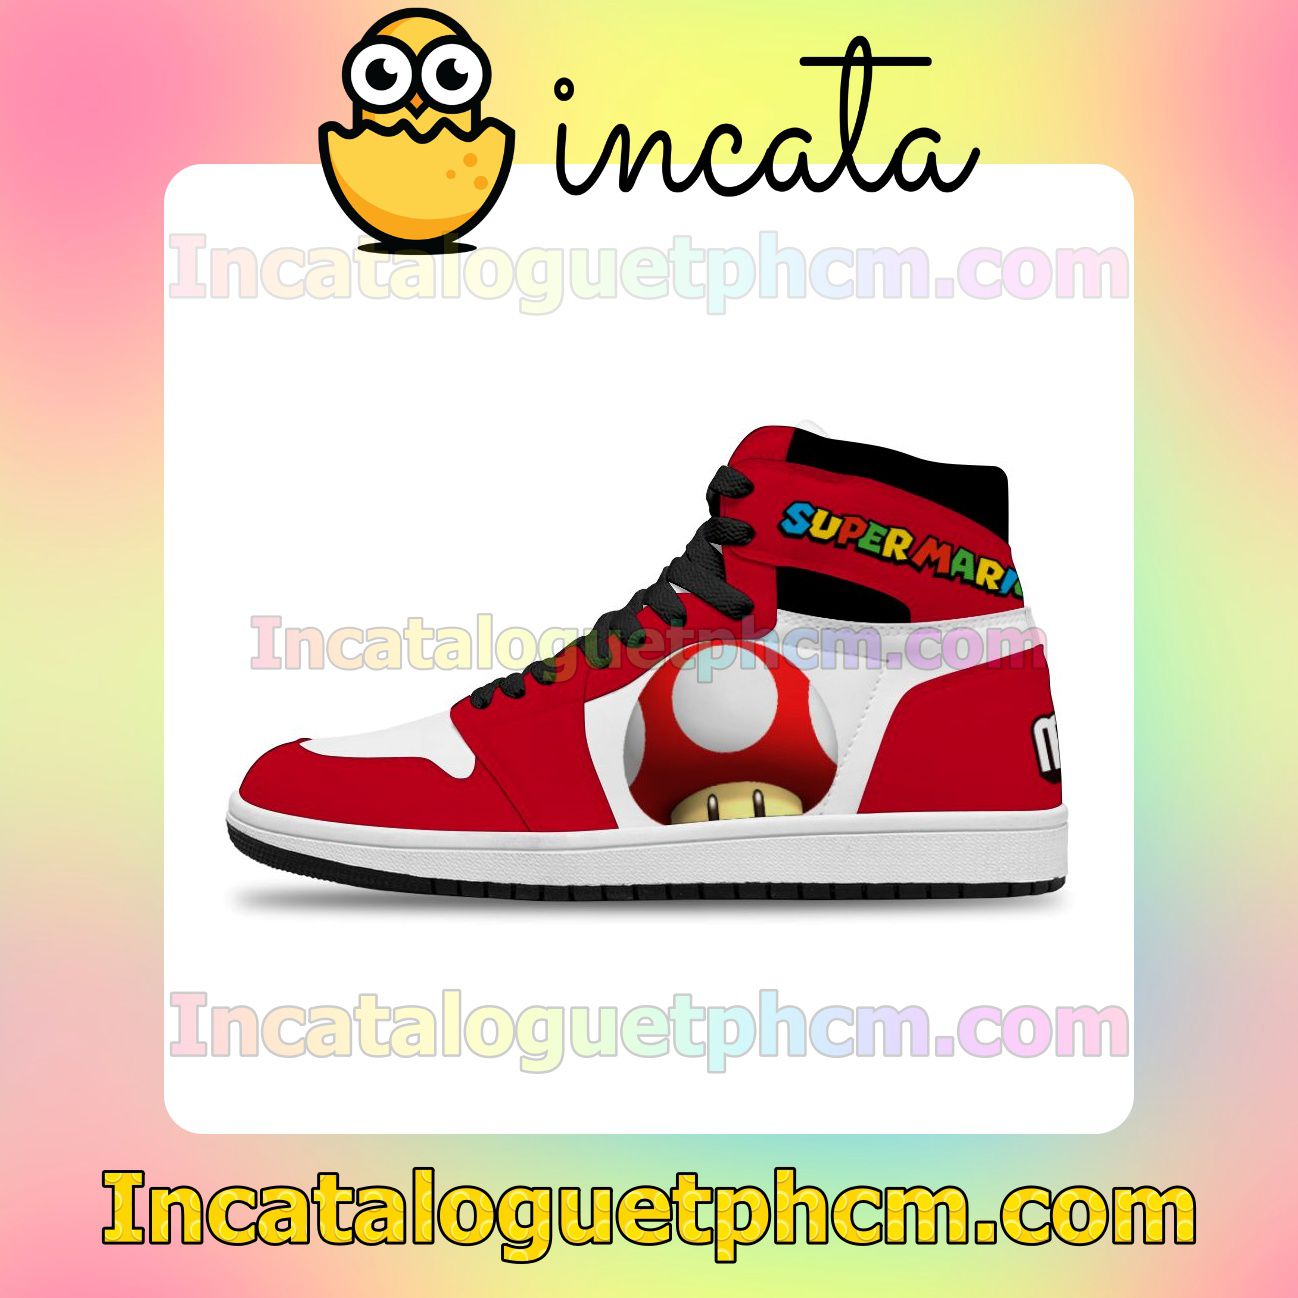 Super Mario Goomba Air Jordan 1 Inspired Shoes